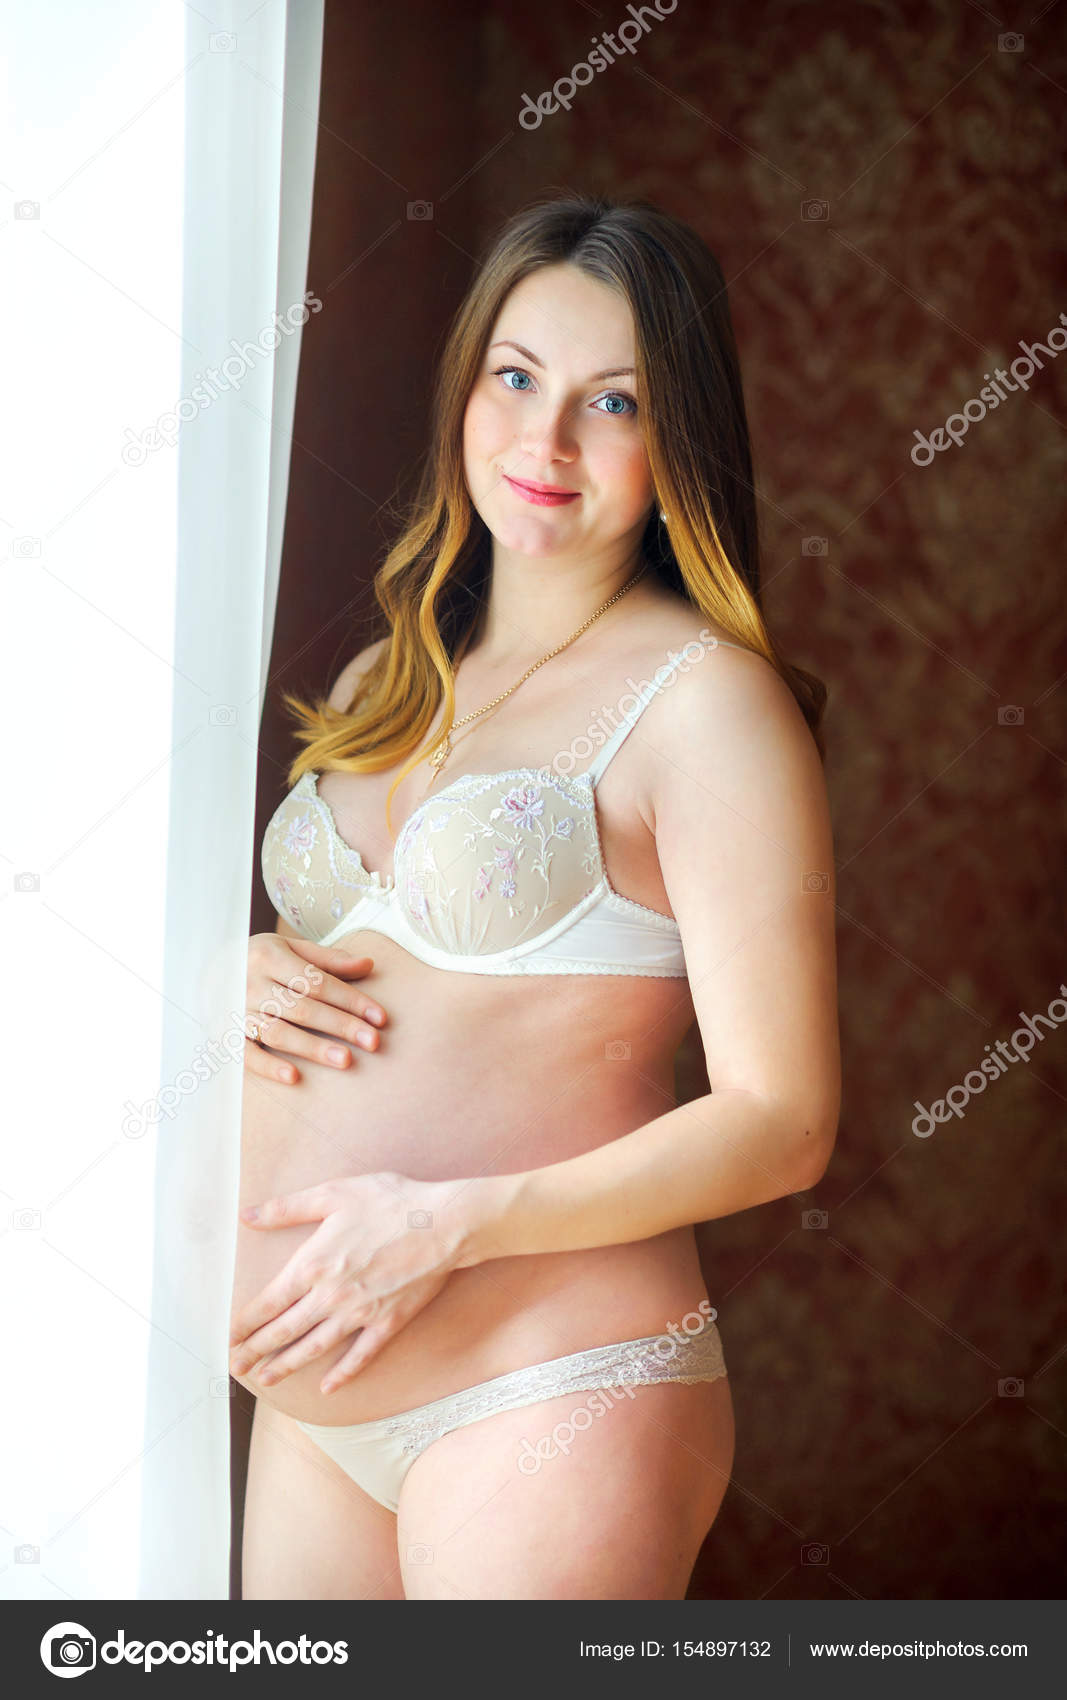 Pregnant Beautiful Porn - Gorgeous naked pregnant women - XXX photo